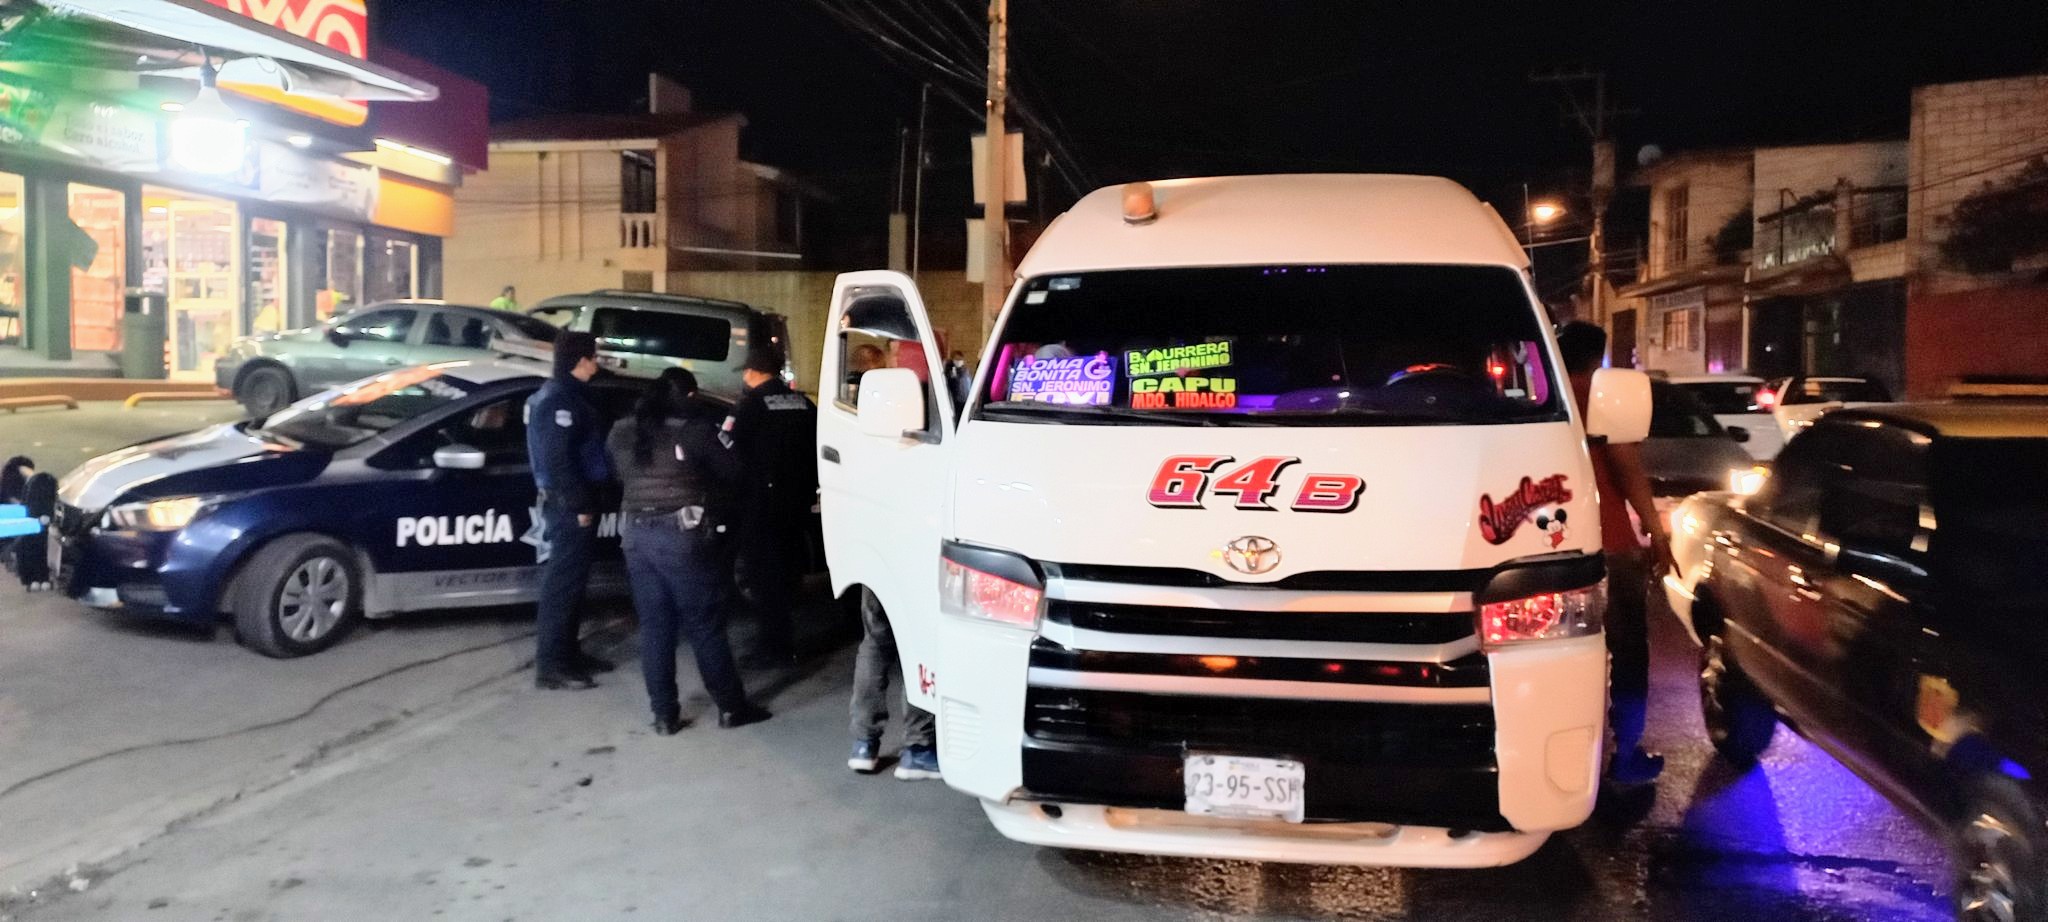 Se registran 3 asaltos al transporte público en Puebla en menos de 12 horas